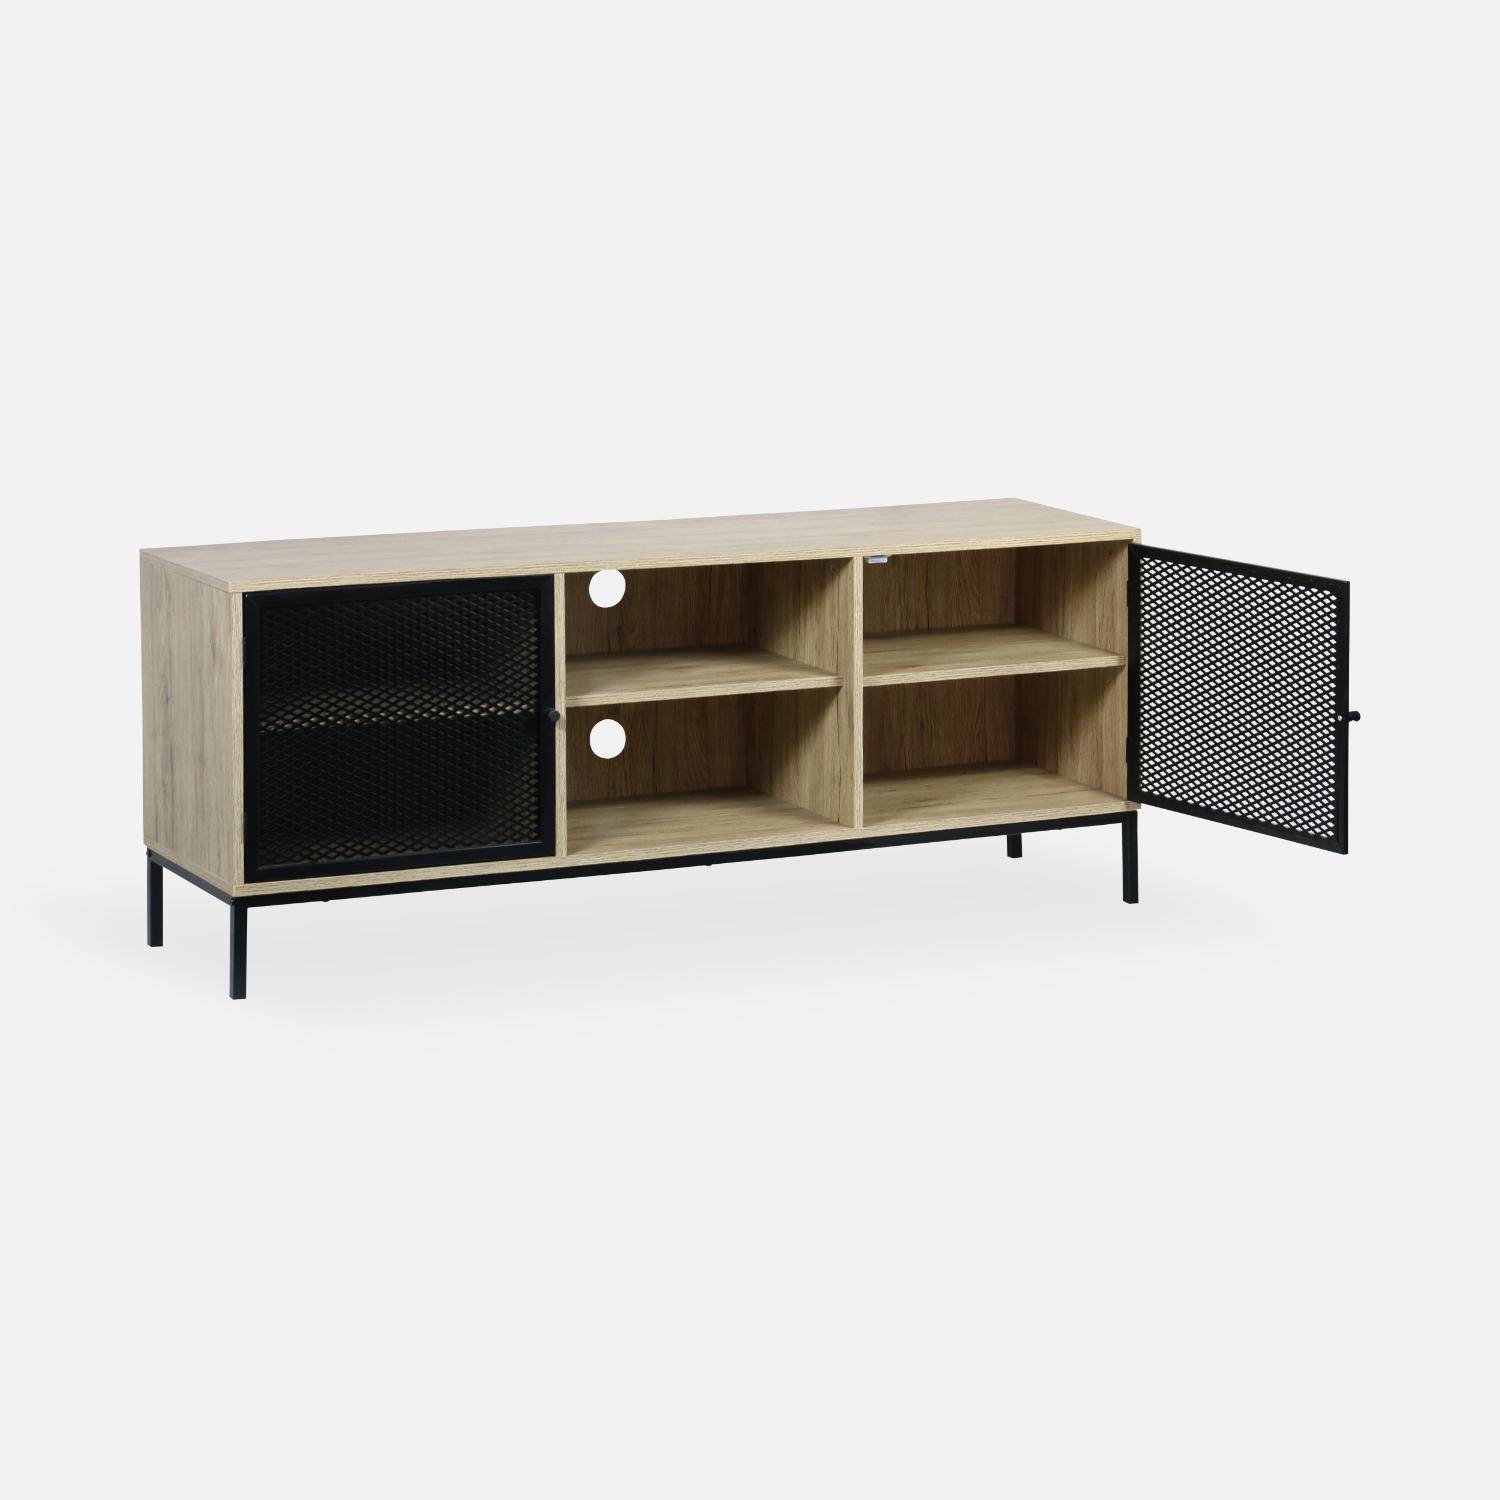 Mueble TV madera y metal 150x40x60cm - Brooklyn - 2 puertas et 6 compartimentos de almacenaje Photo5